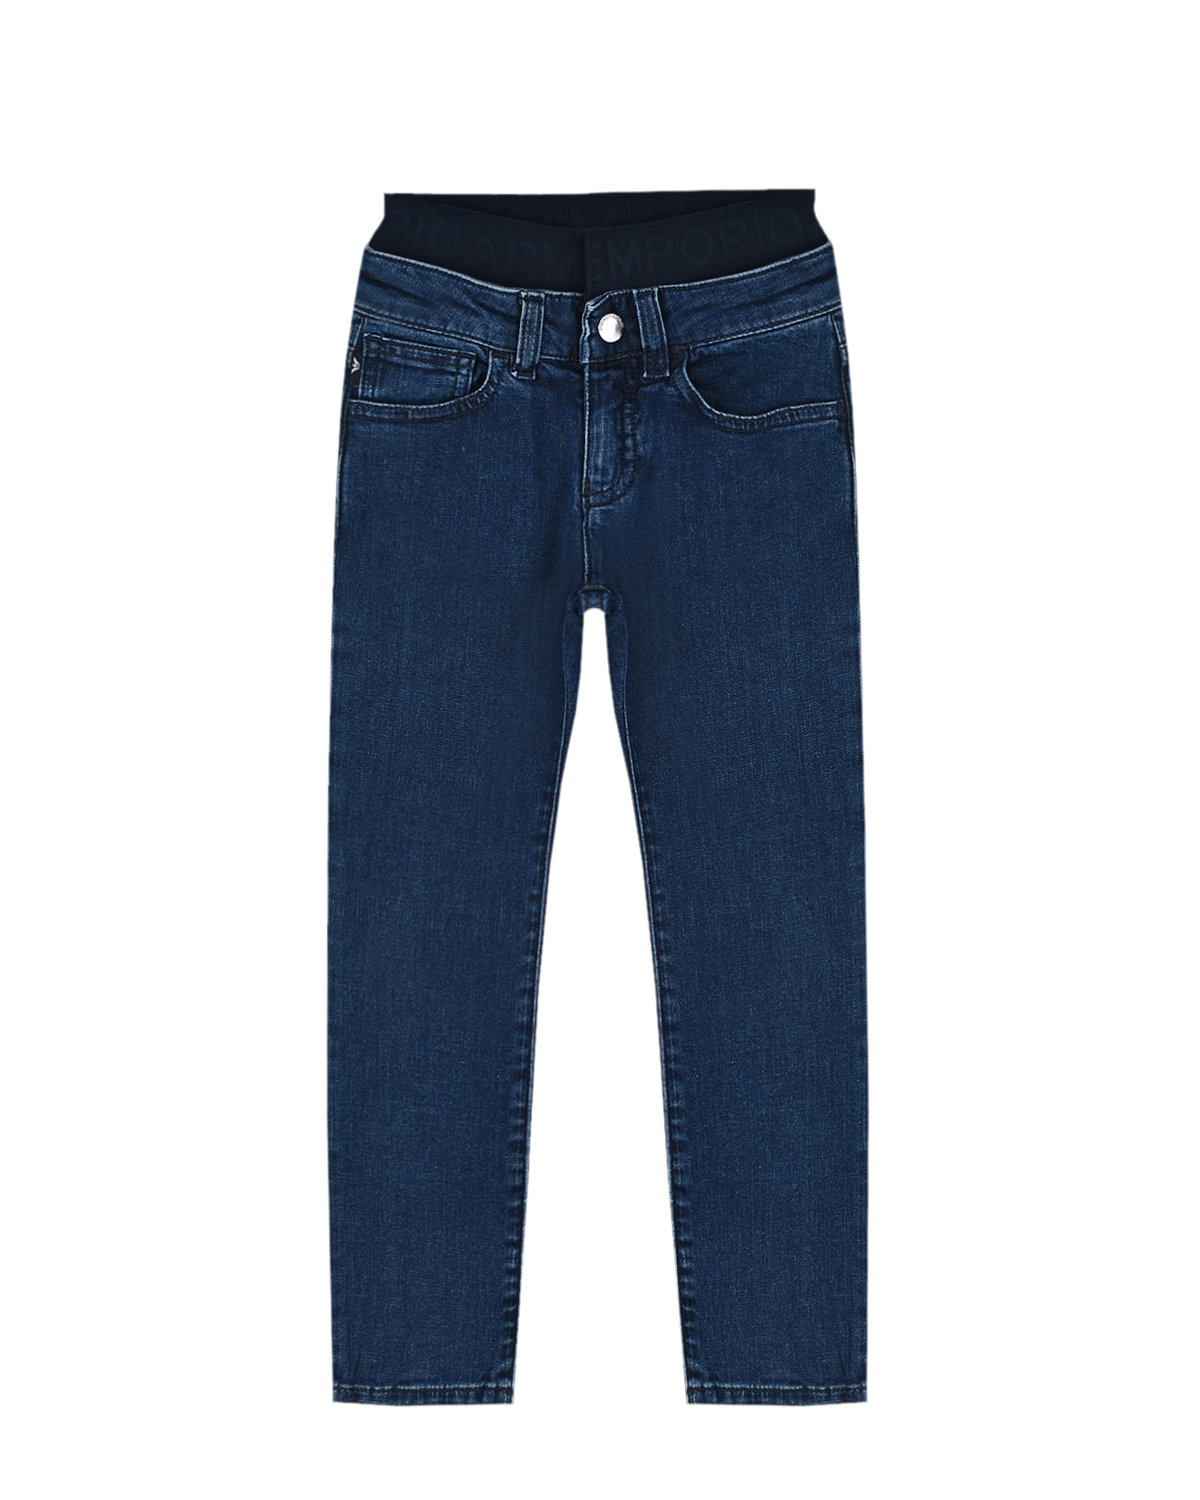 Синие джинсы с поясом на резинке Emporio Armani детские, размер 140, цвет синий